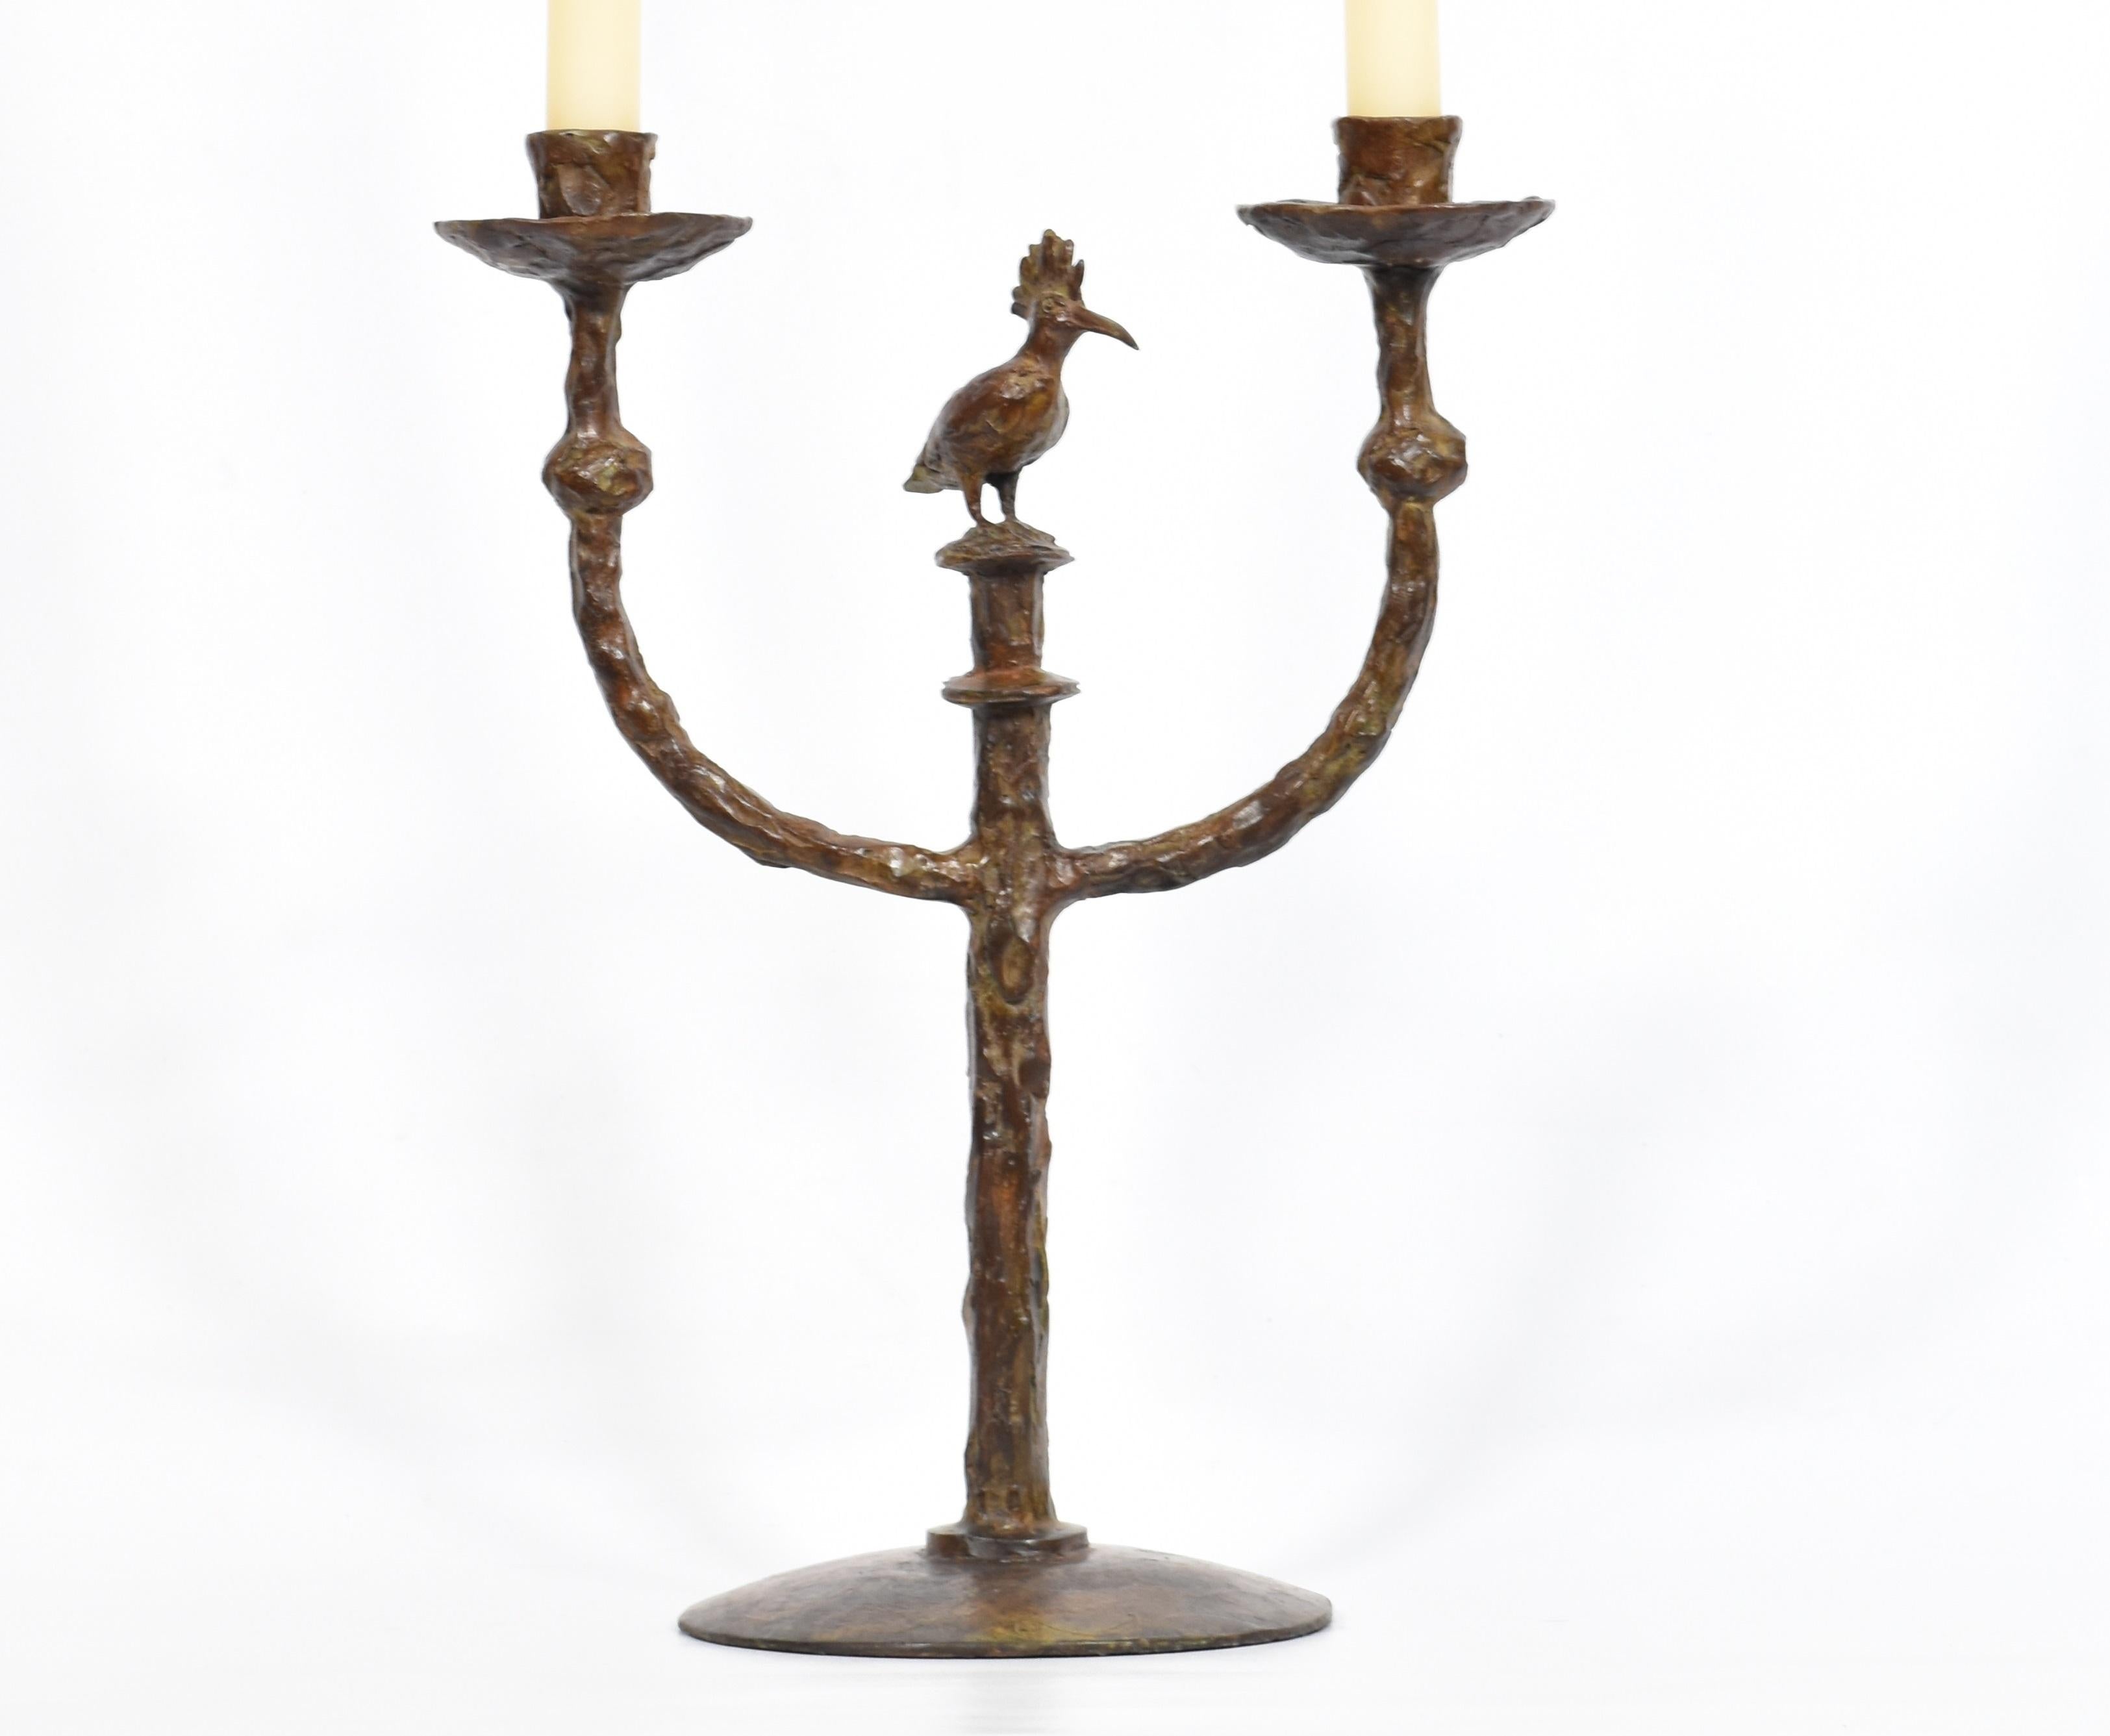 Kerzenleuchter aus Bronzeguss
Kandelaber aus Bronzeguss mit einem Wiedehopf*, einem wunderschönen kleinen afrikanischen Vogel. Handgefertigter und einzigartiger Kerzenständer aus Bronzeguss. Die Höhe ohne Kerzen beträgt 42 cm. Kerzen sind nicht